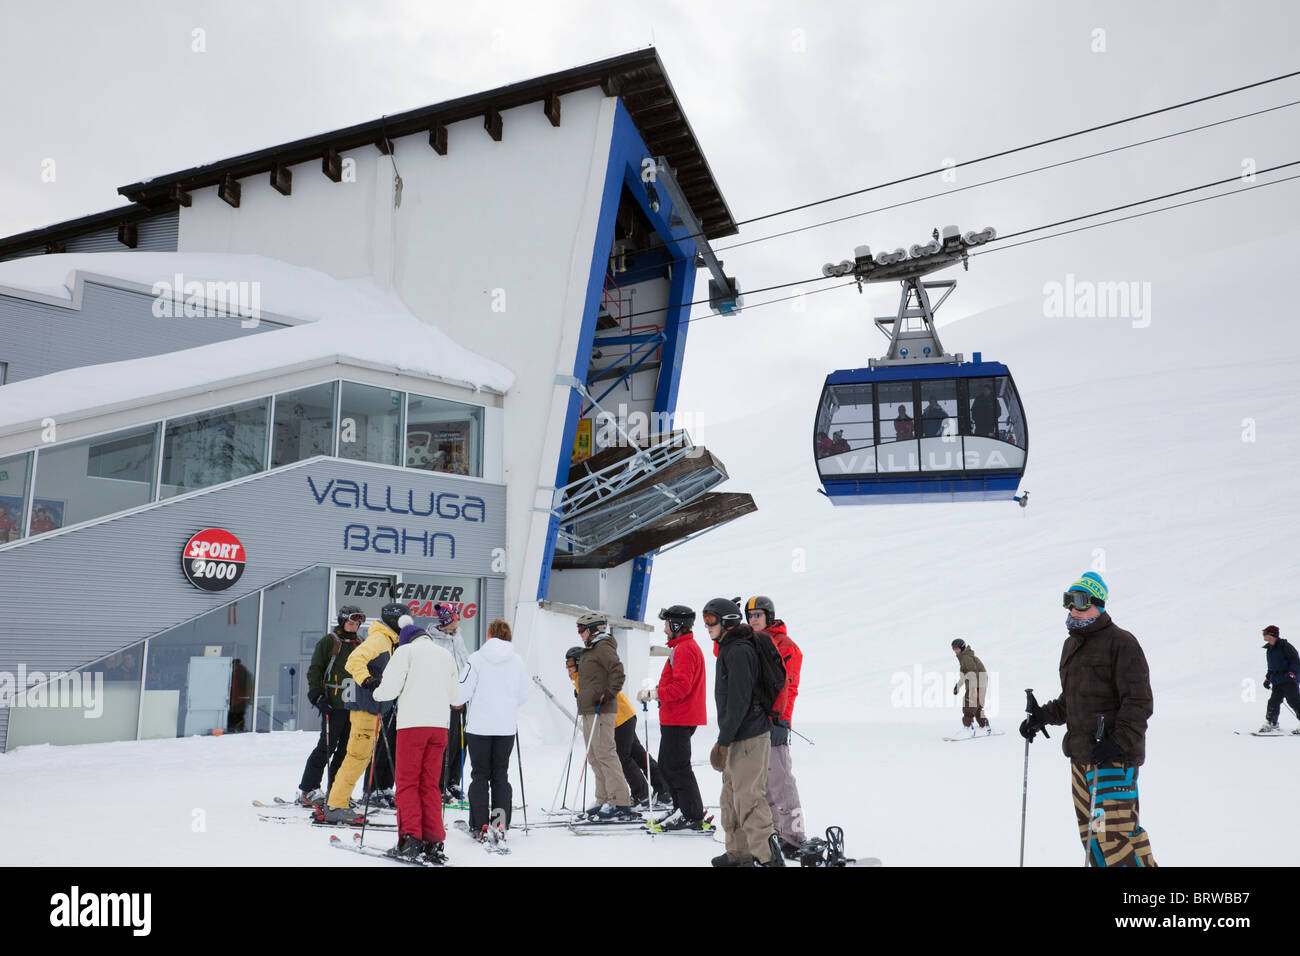 Skieurs et Valluga Bahn avec cable car au sommet de la station de télécabine Galzig Alpes autrichiennes en hiver. St Anton, Tyrol, Autriche. Banque D'Images